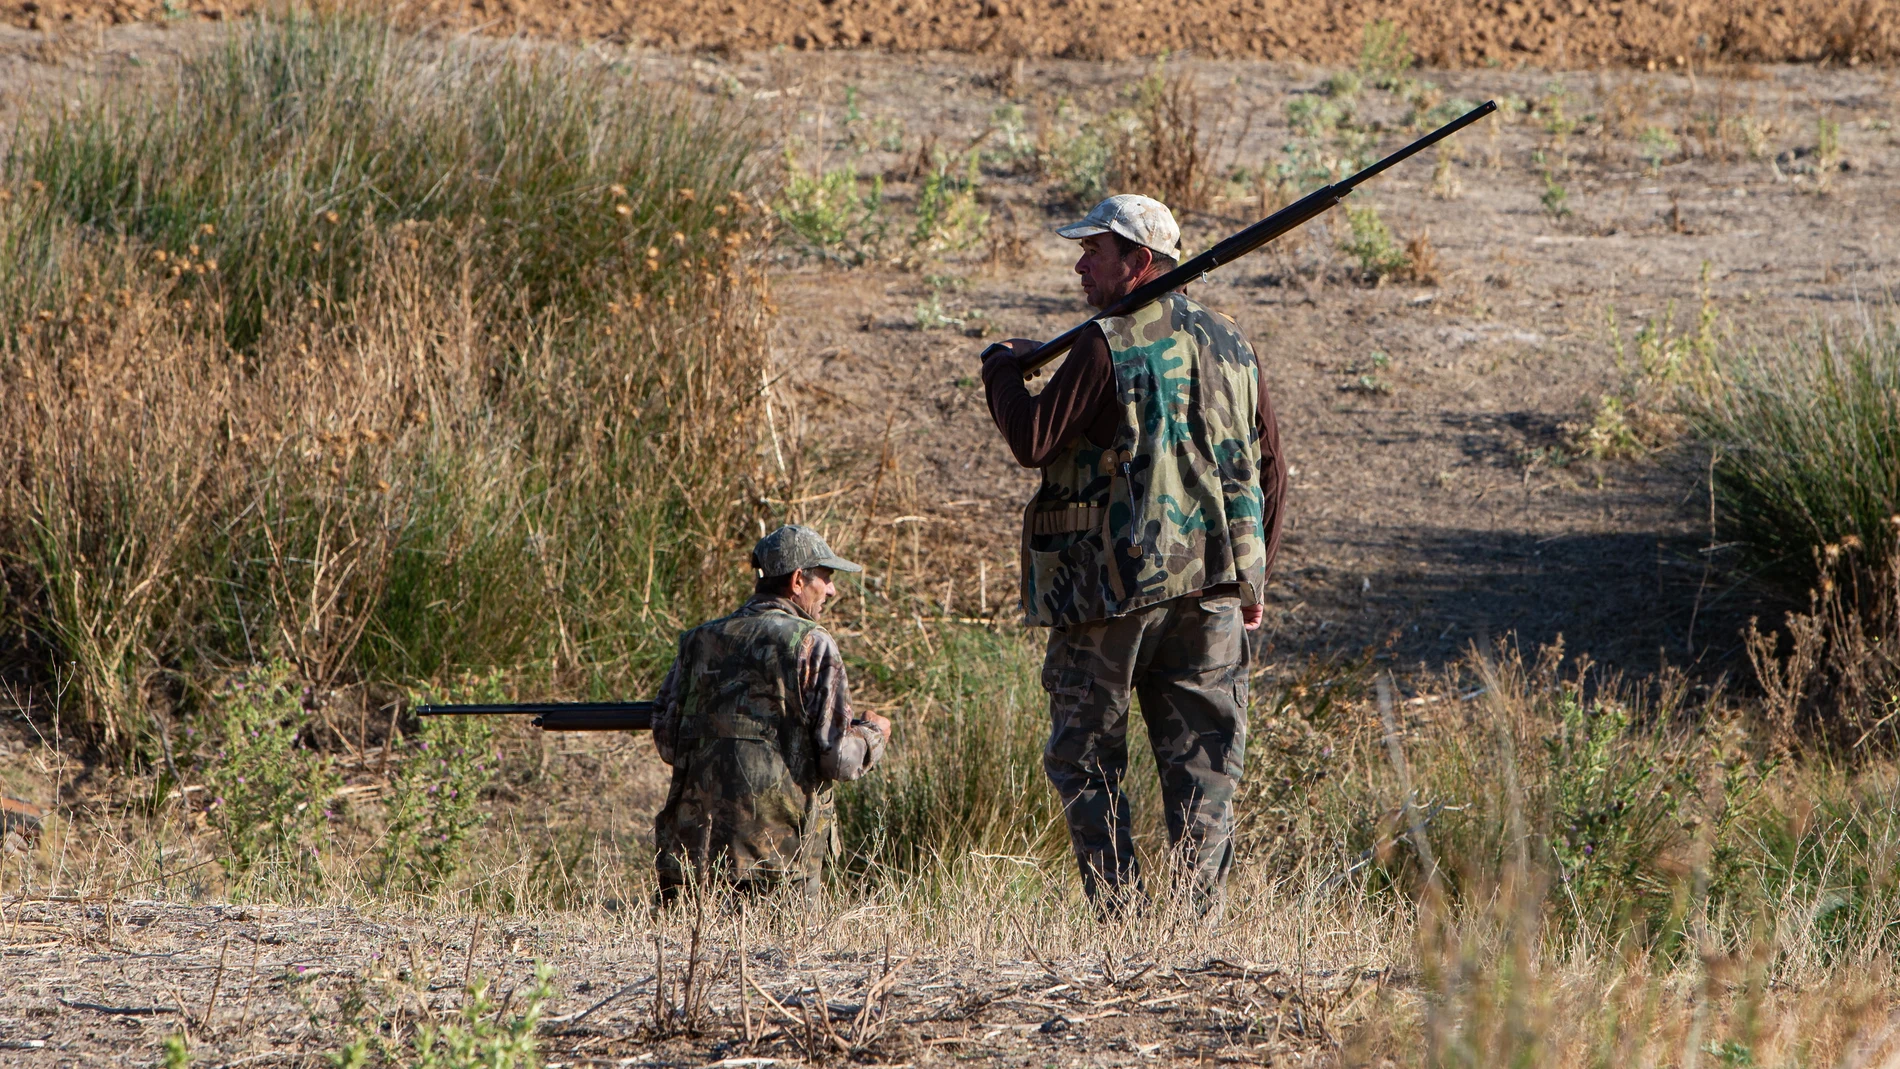 La caza, según el sector, es una actividad que crea riqueza, fija la población al territorio y contribuye a la conservación del medio ambiente